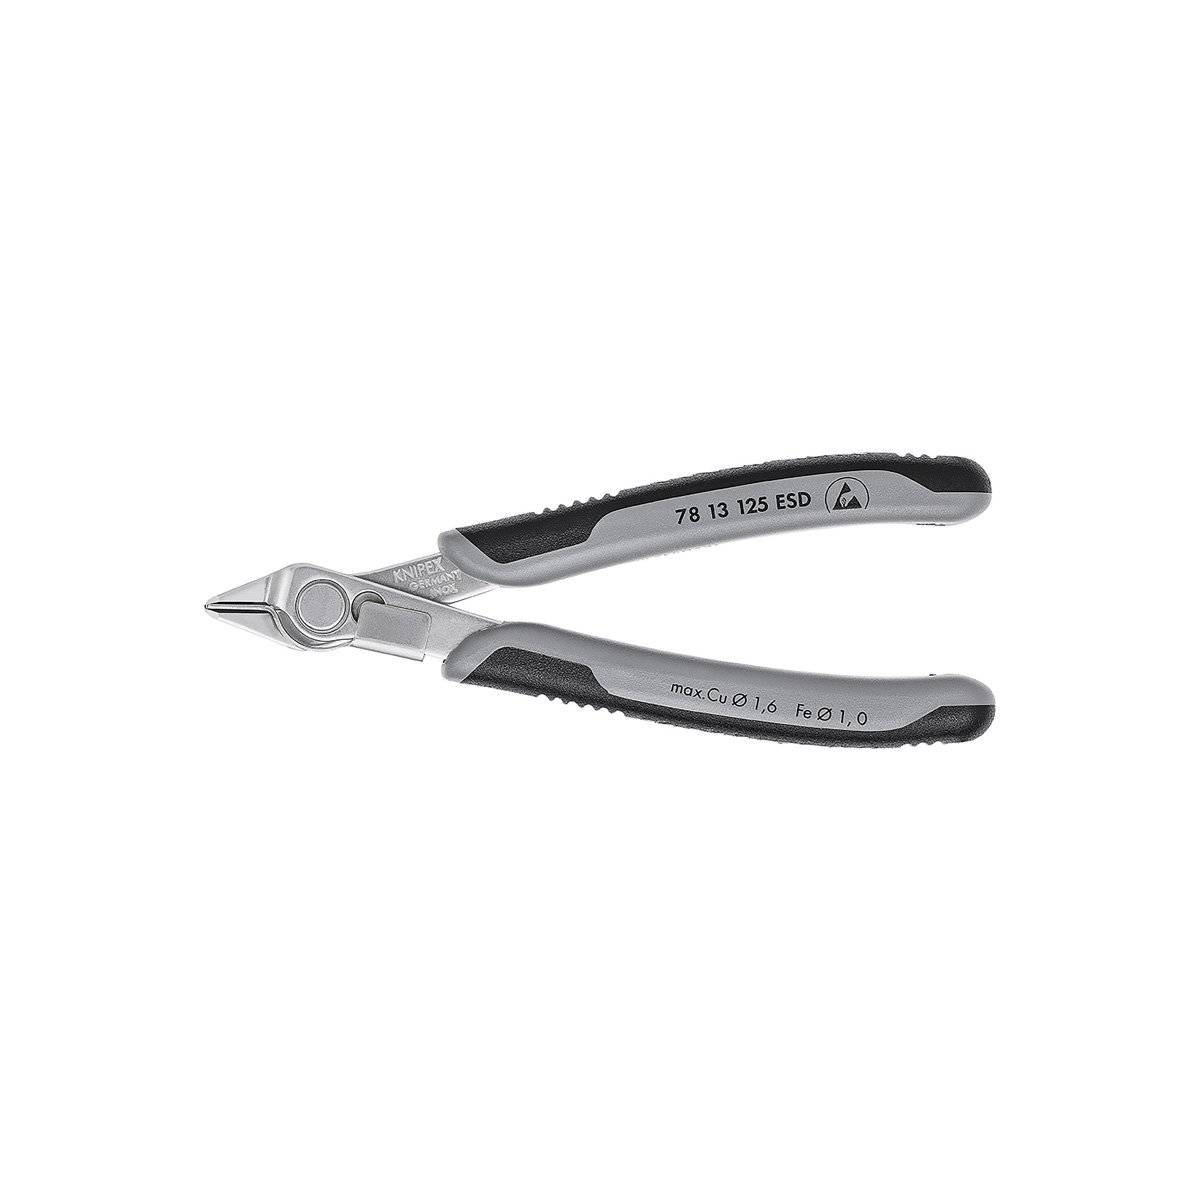 Electronic Super Knips® Бокорезы прецизионные ESD, зажим для проволоки, нерж., 125 мм, 2-комп антистатические ручки